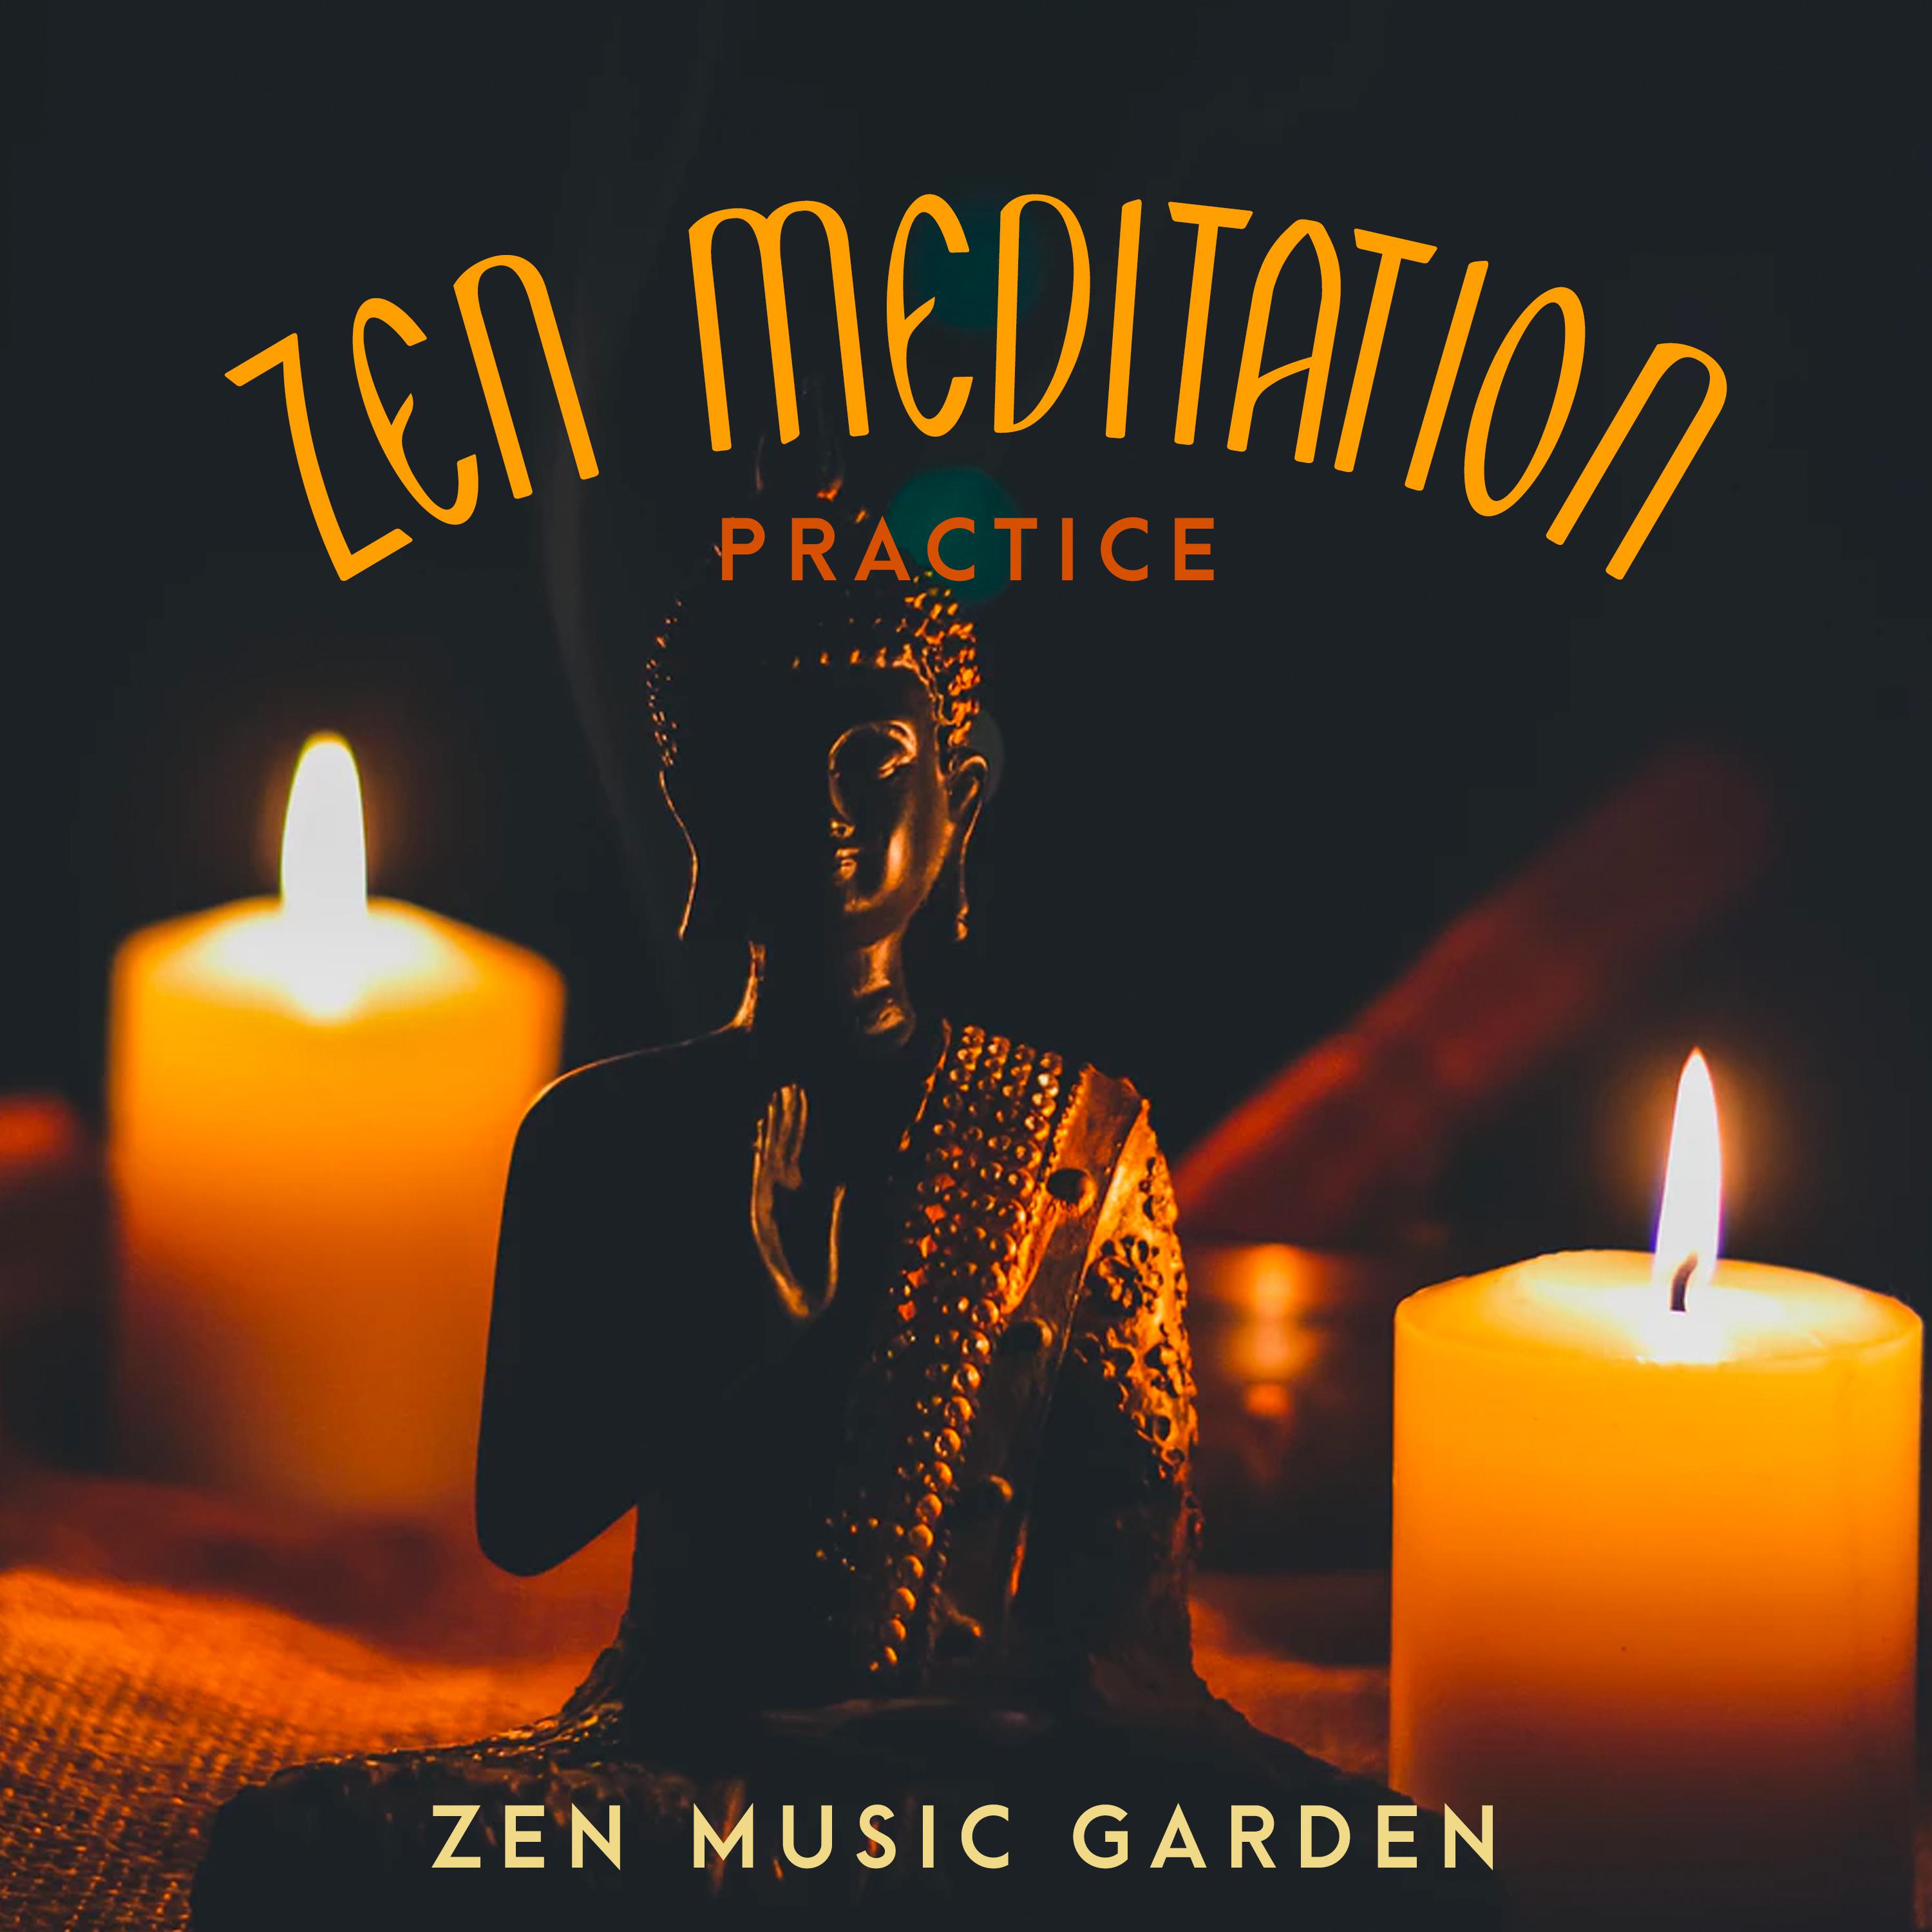 Zen Meditation Practice